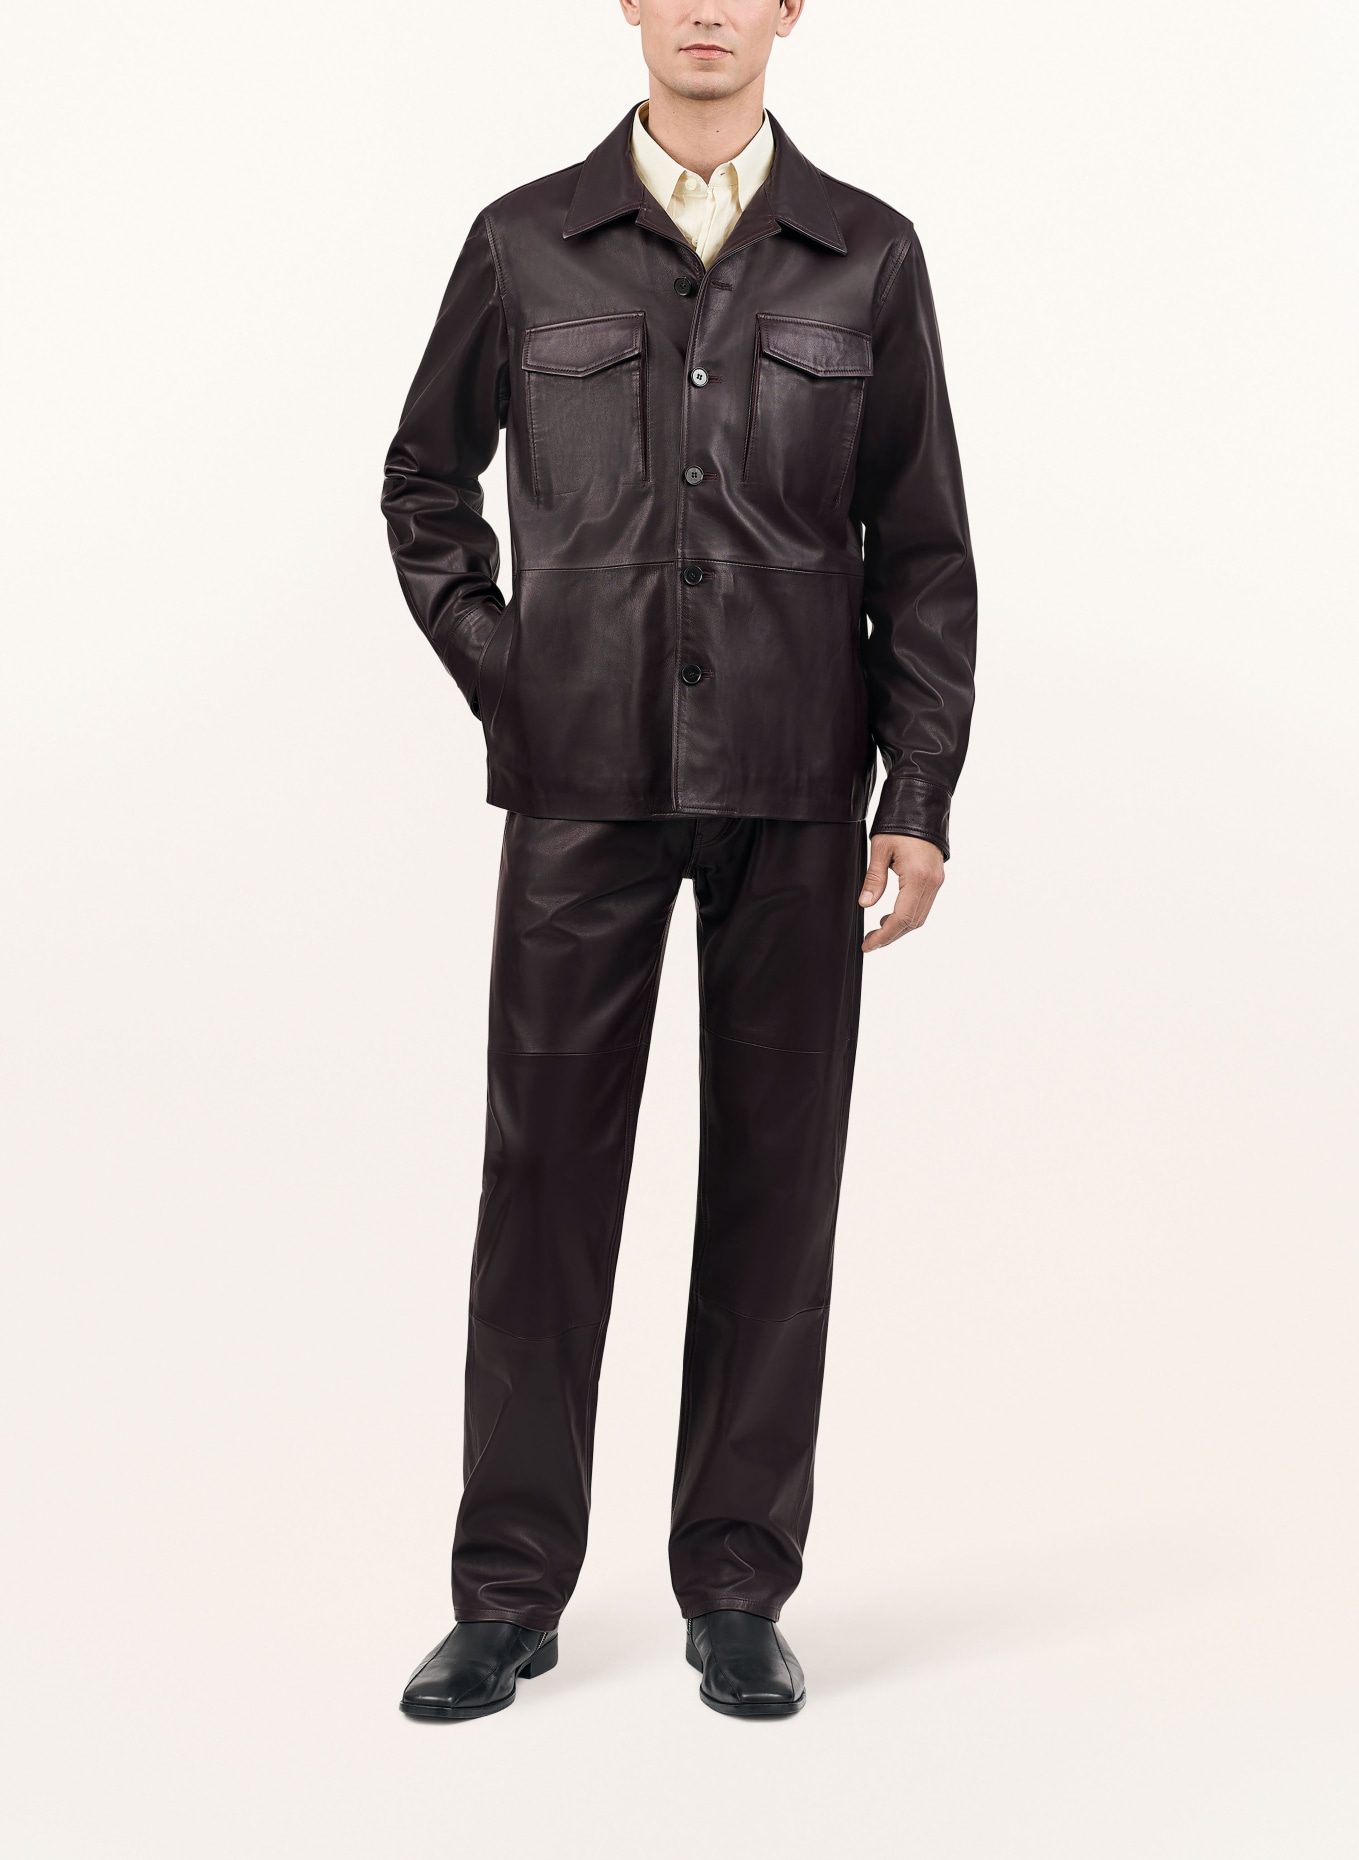 TIGER OF SWEDEN Leather jacket LESON, Color: 653 AUBERGINE (Image 2)